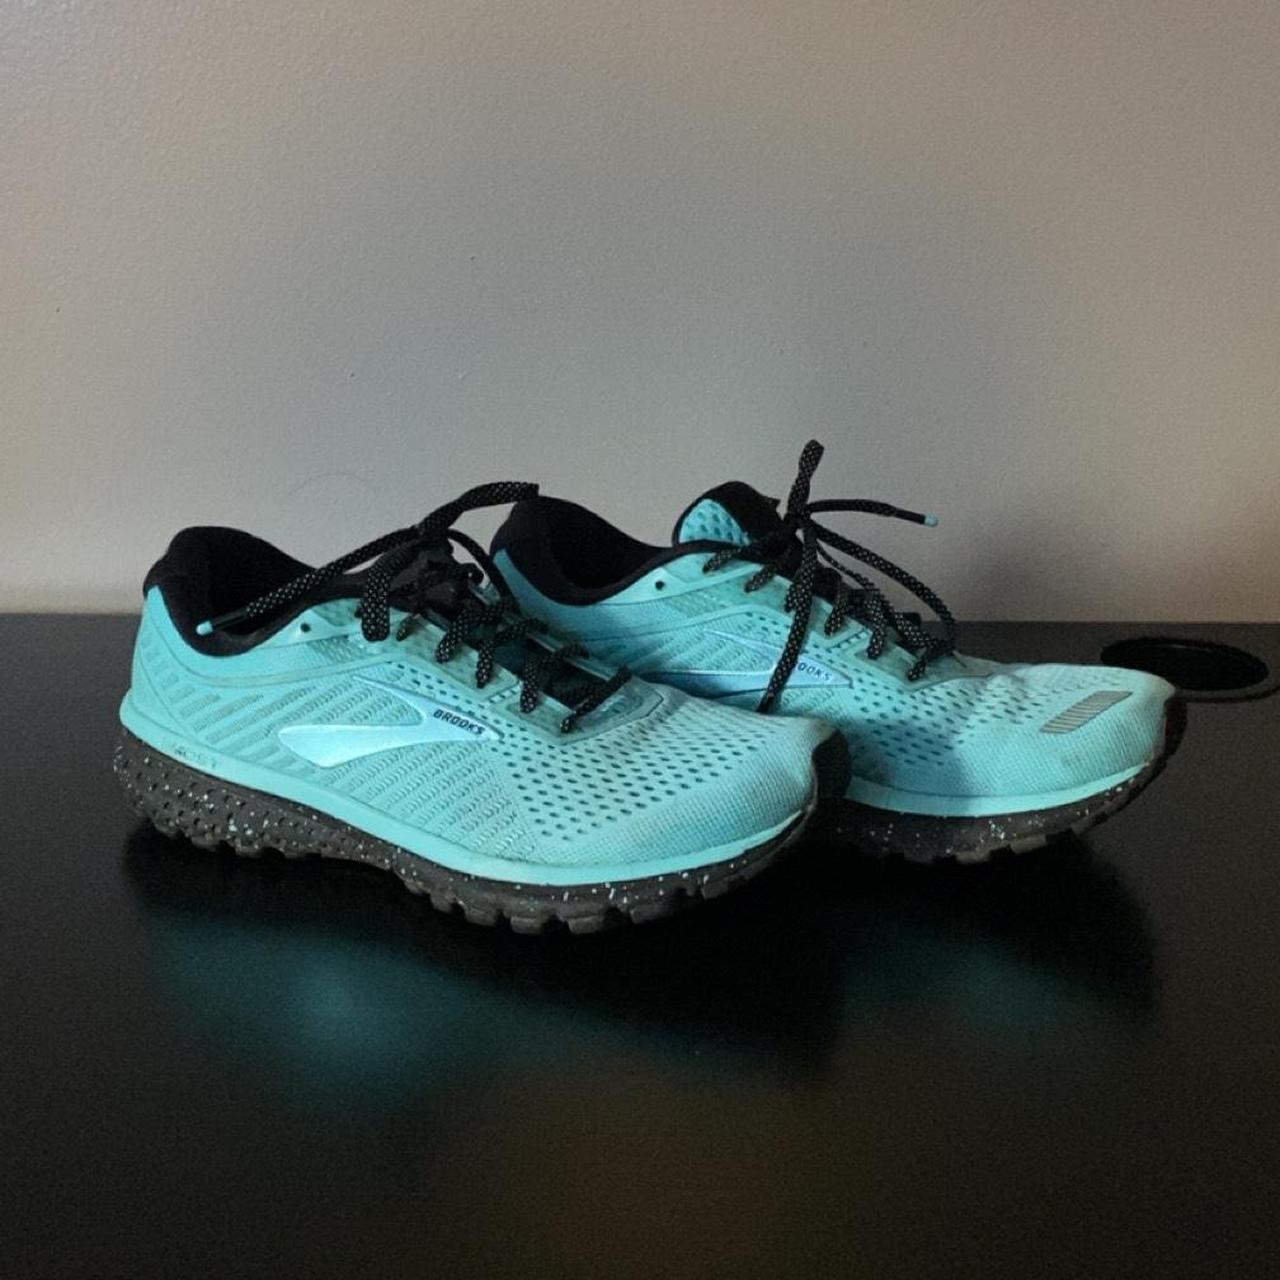 Brooks Transcend 7 Men's Gray Running Shoes Size: 9 - Depop